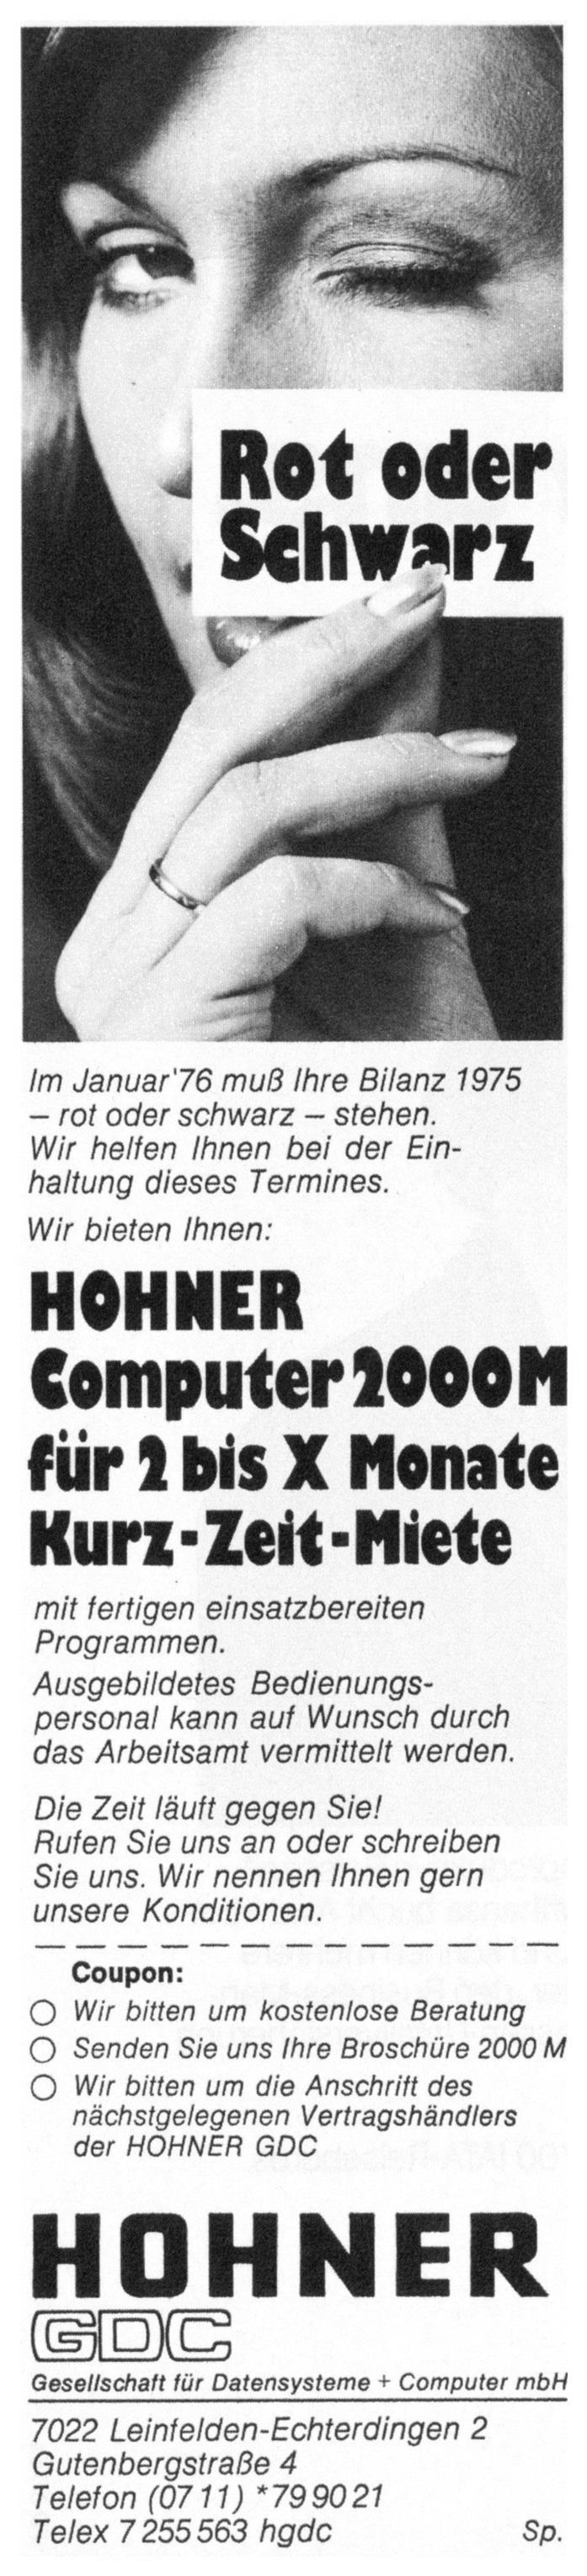 Hohner 1975 0.jpg